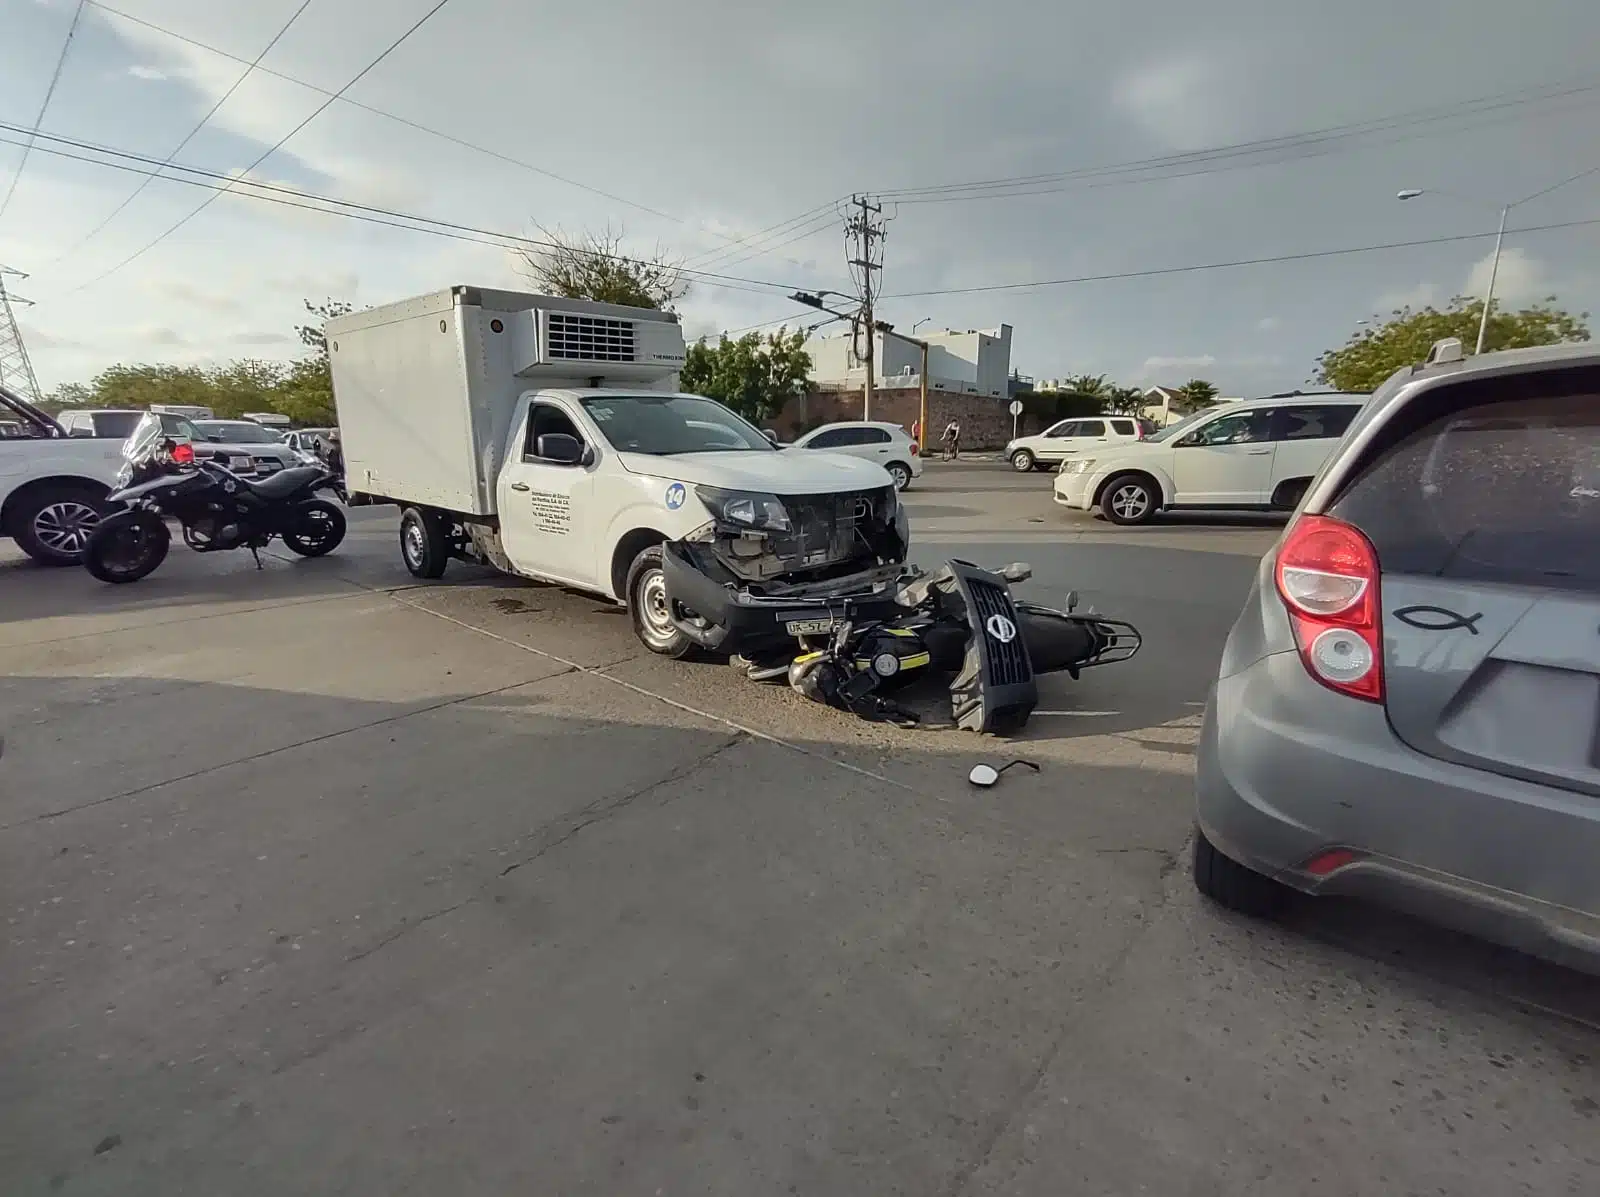 Una joven motociclista resulta con lesiones tras chocar con camioneta en Mazatlán 